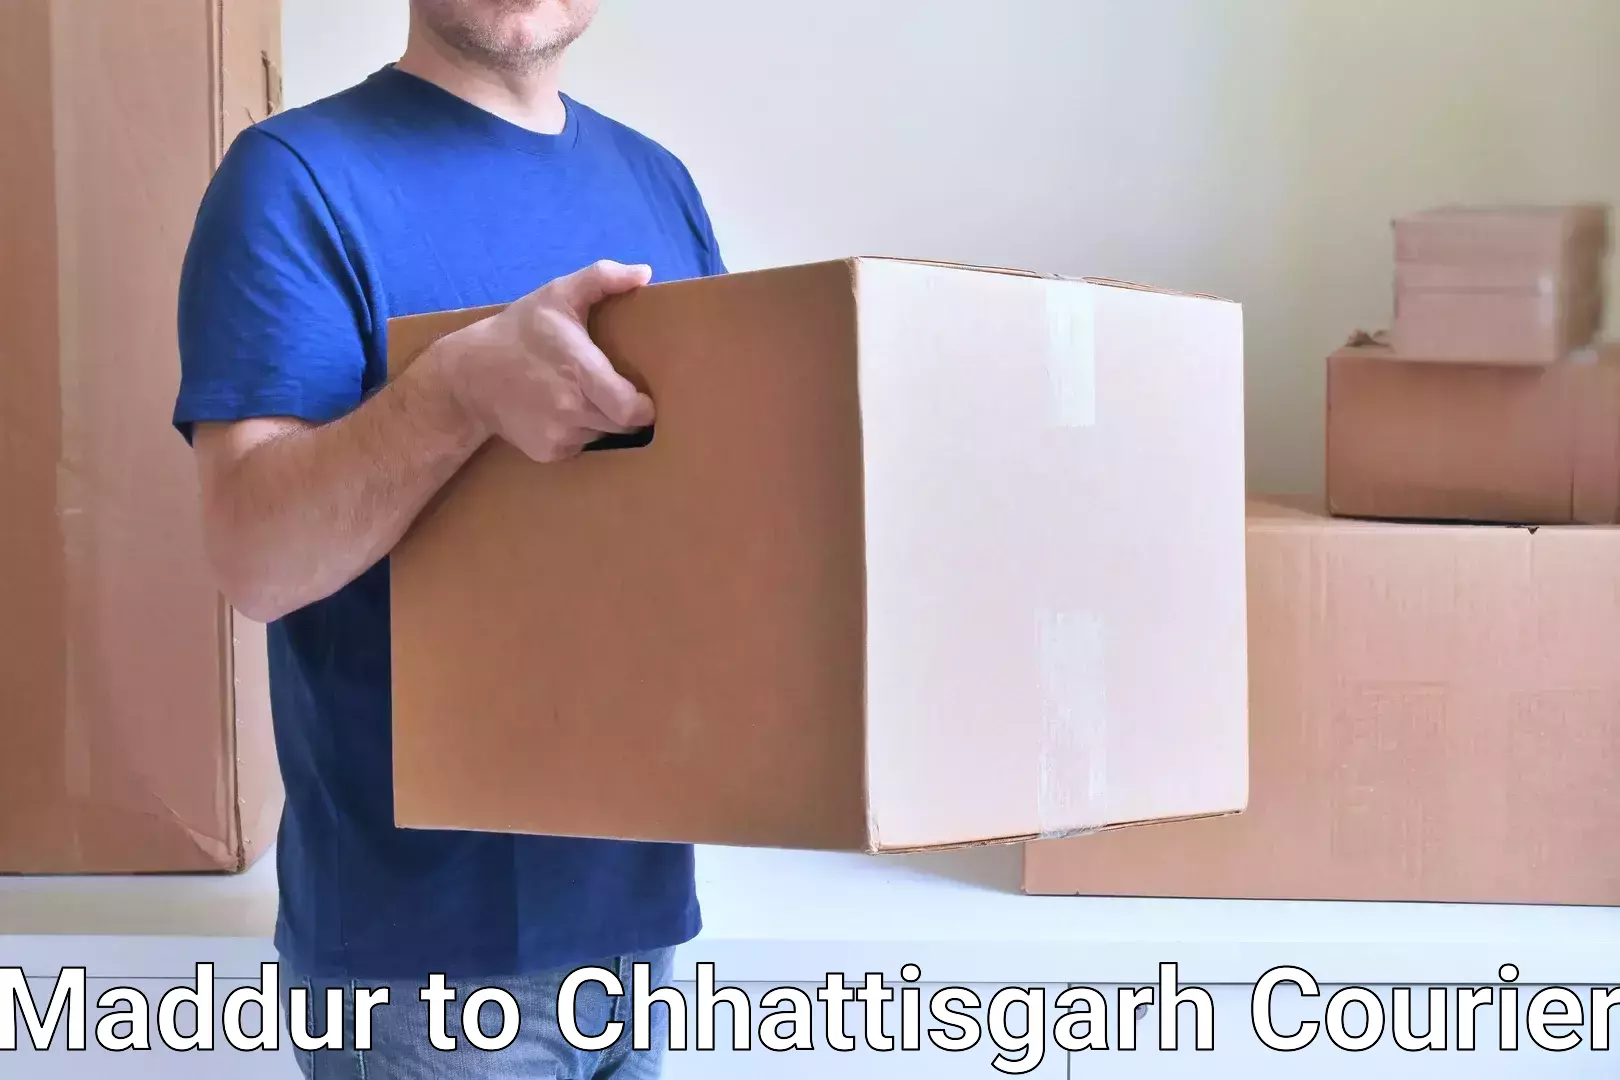 Efficient parcel tracking in Maddur to Bijapur Chhattisgarh